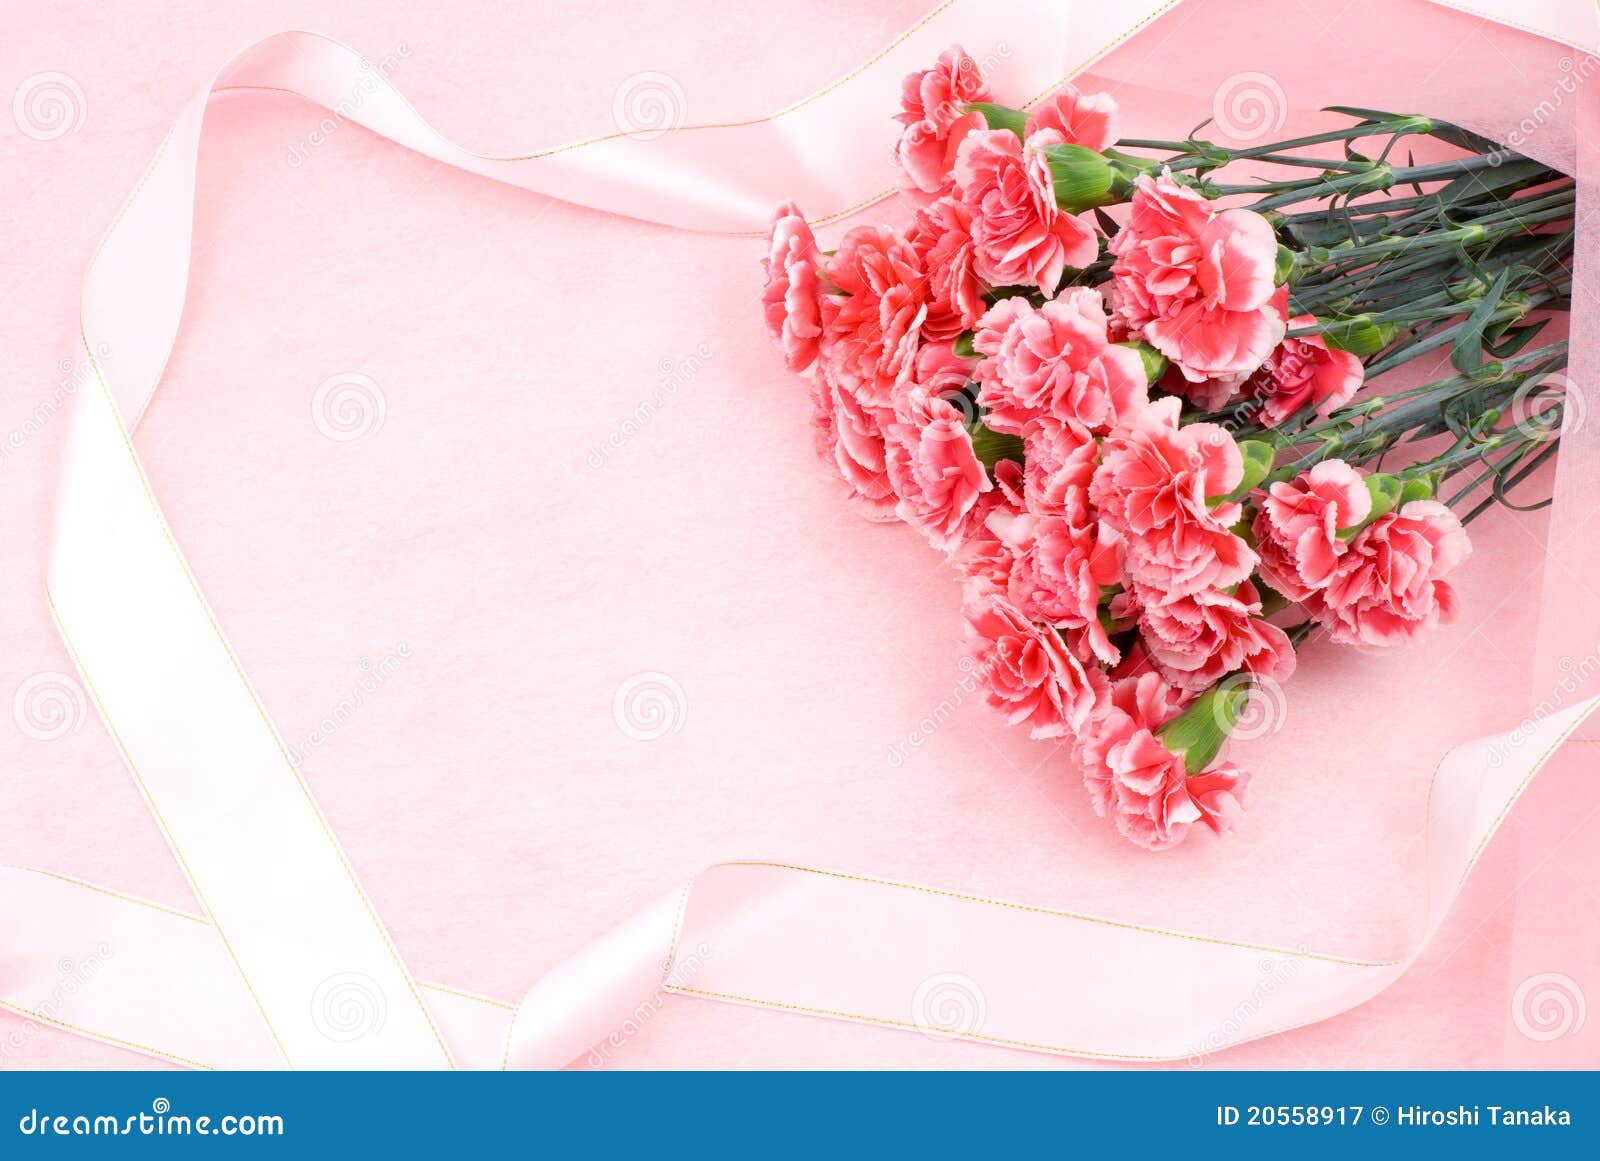 #229進口康乃馨花束-米蘭歐式花坊